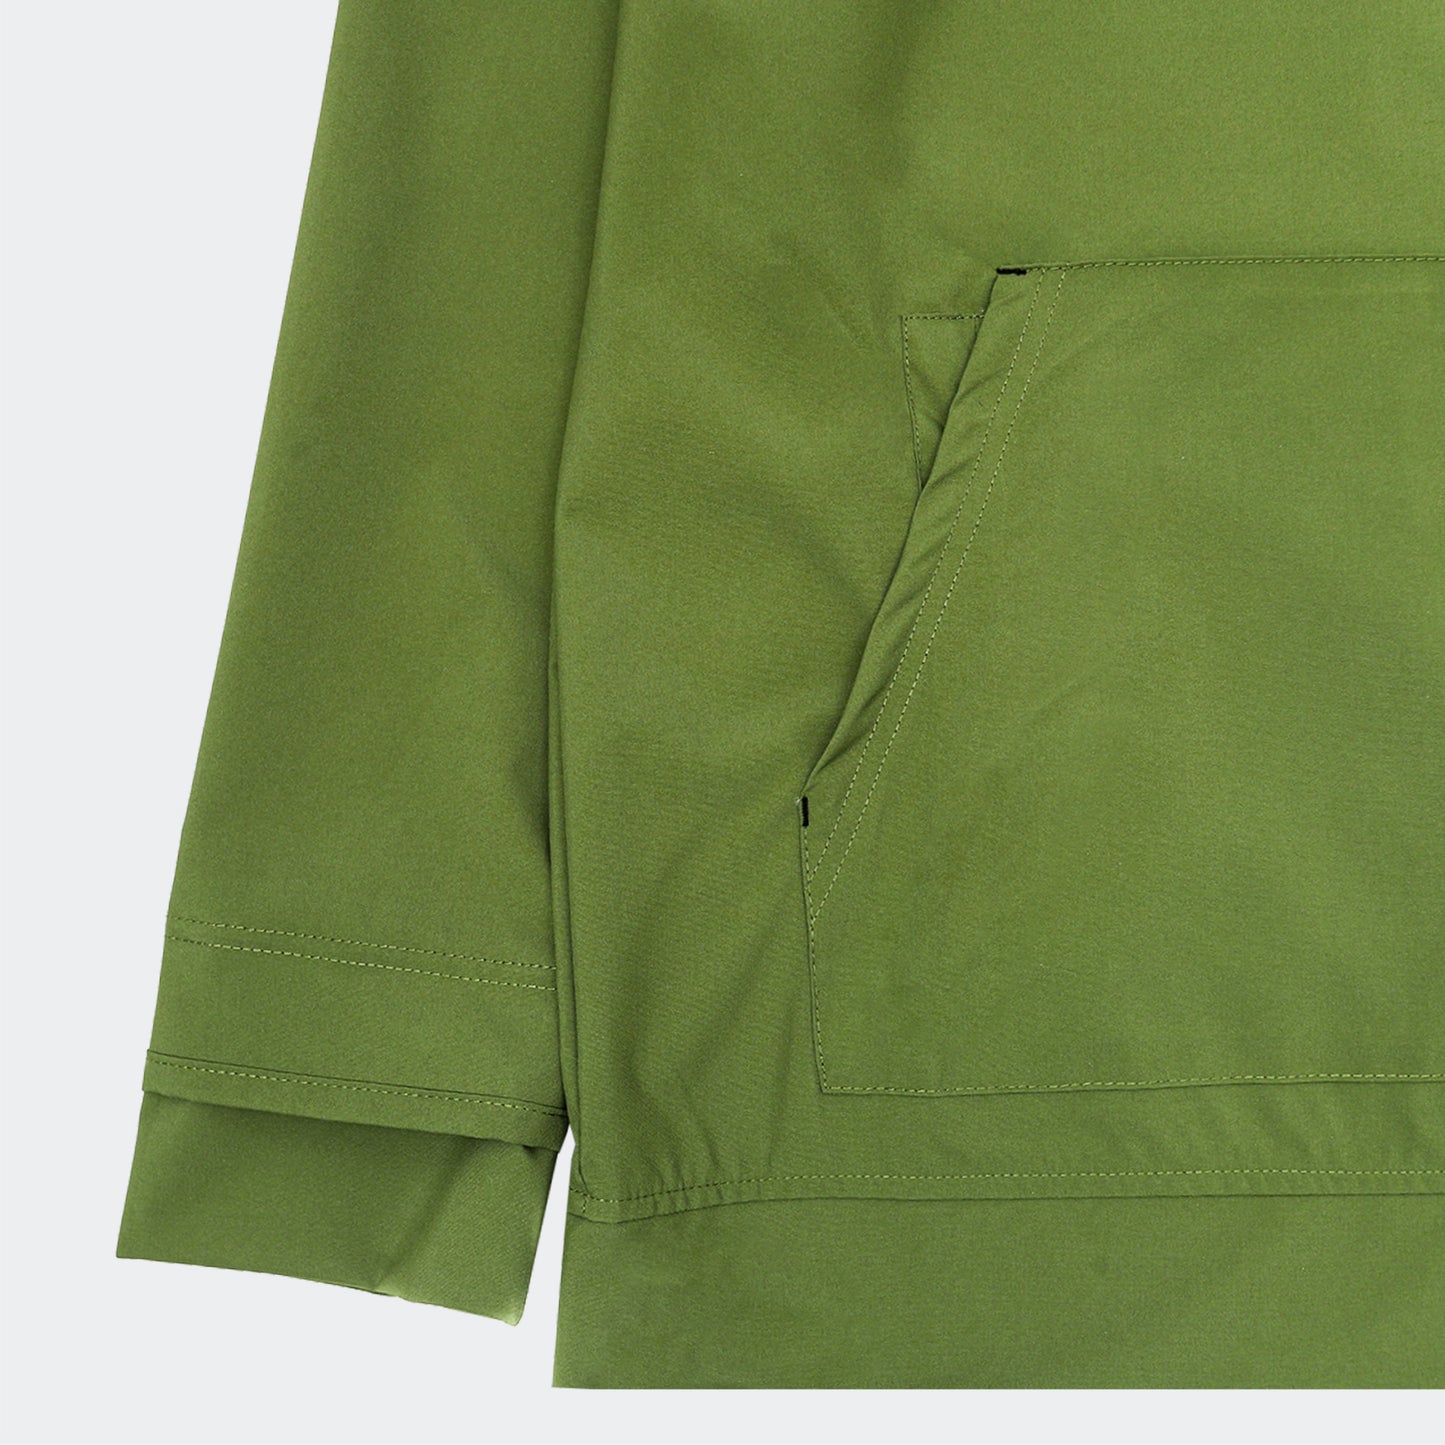 Watertech™ - Pullover Hoodie Training Jacket - Algae Green